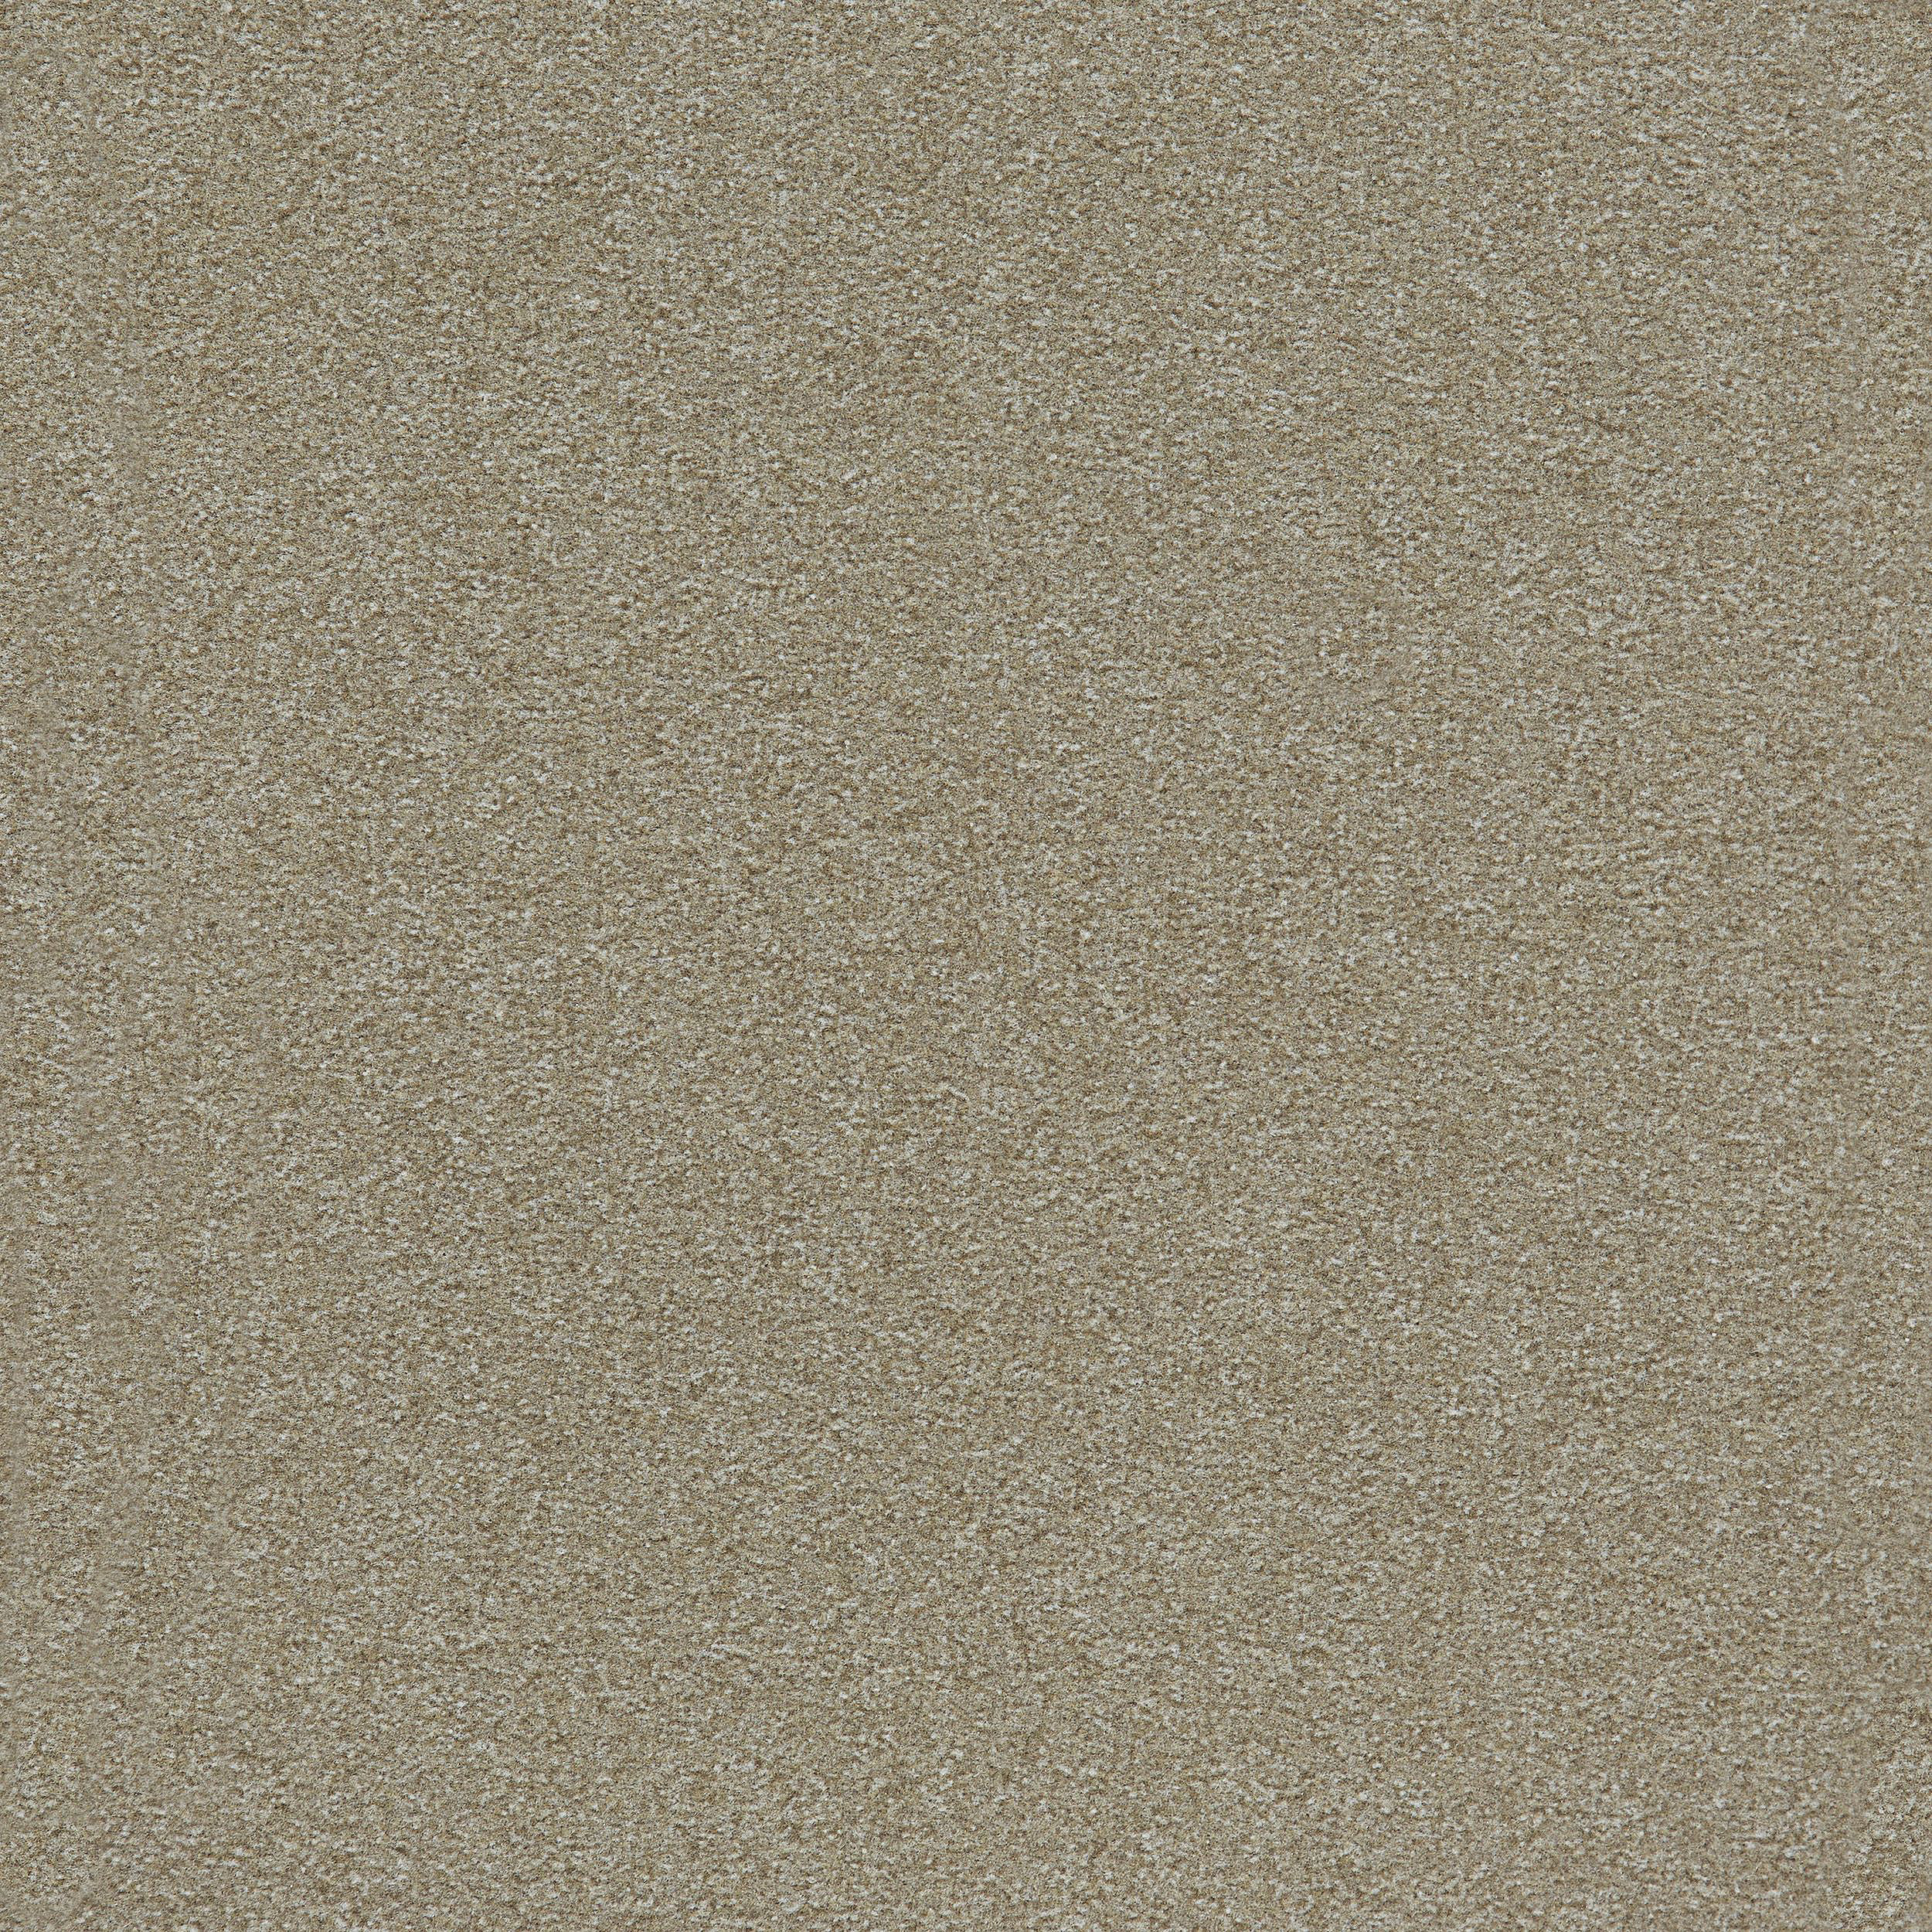 Heuga 725 Carpet Tile In Oyster image number 6